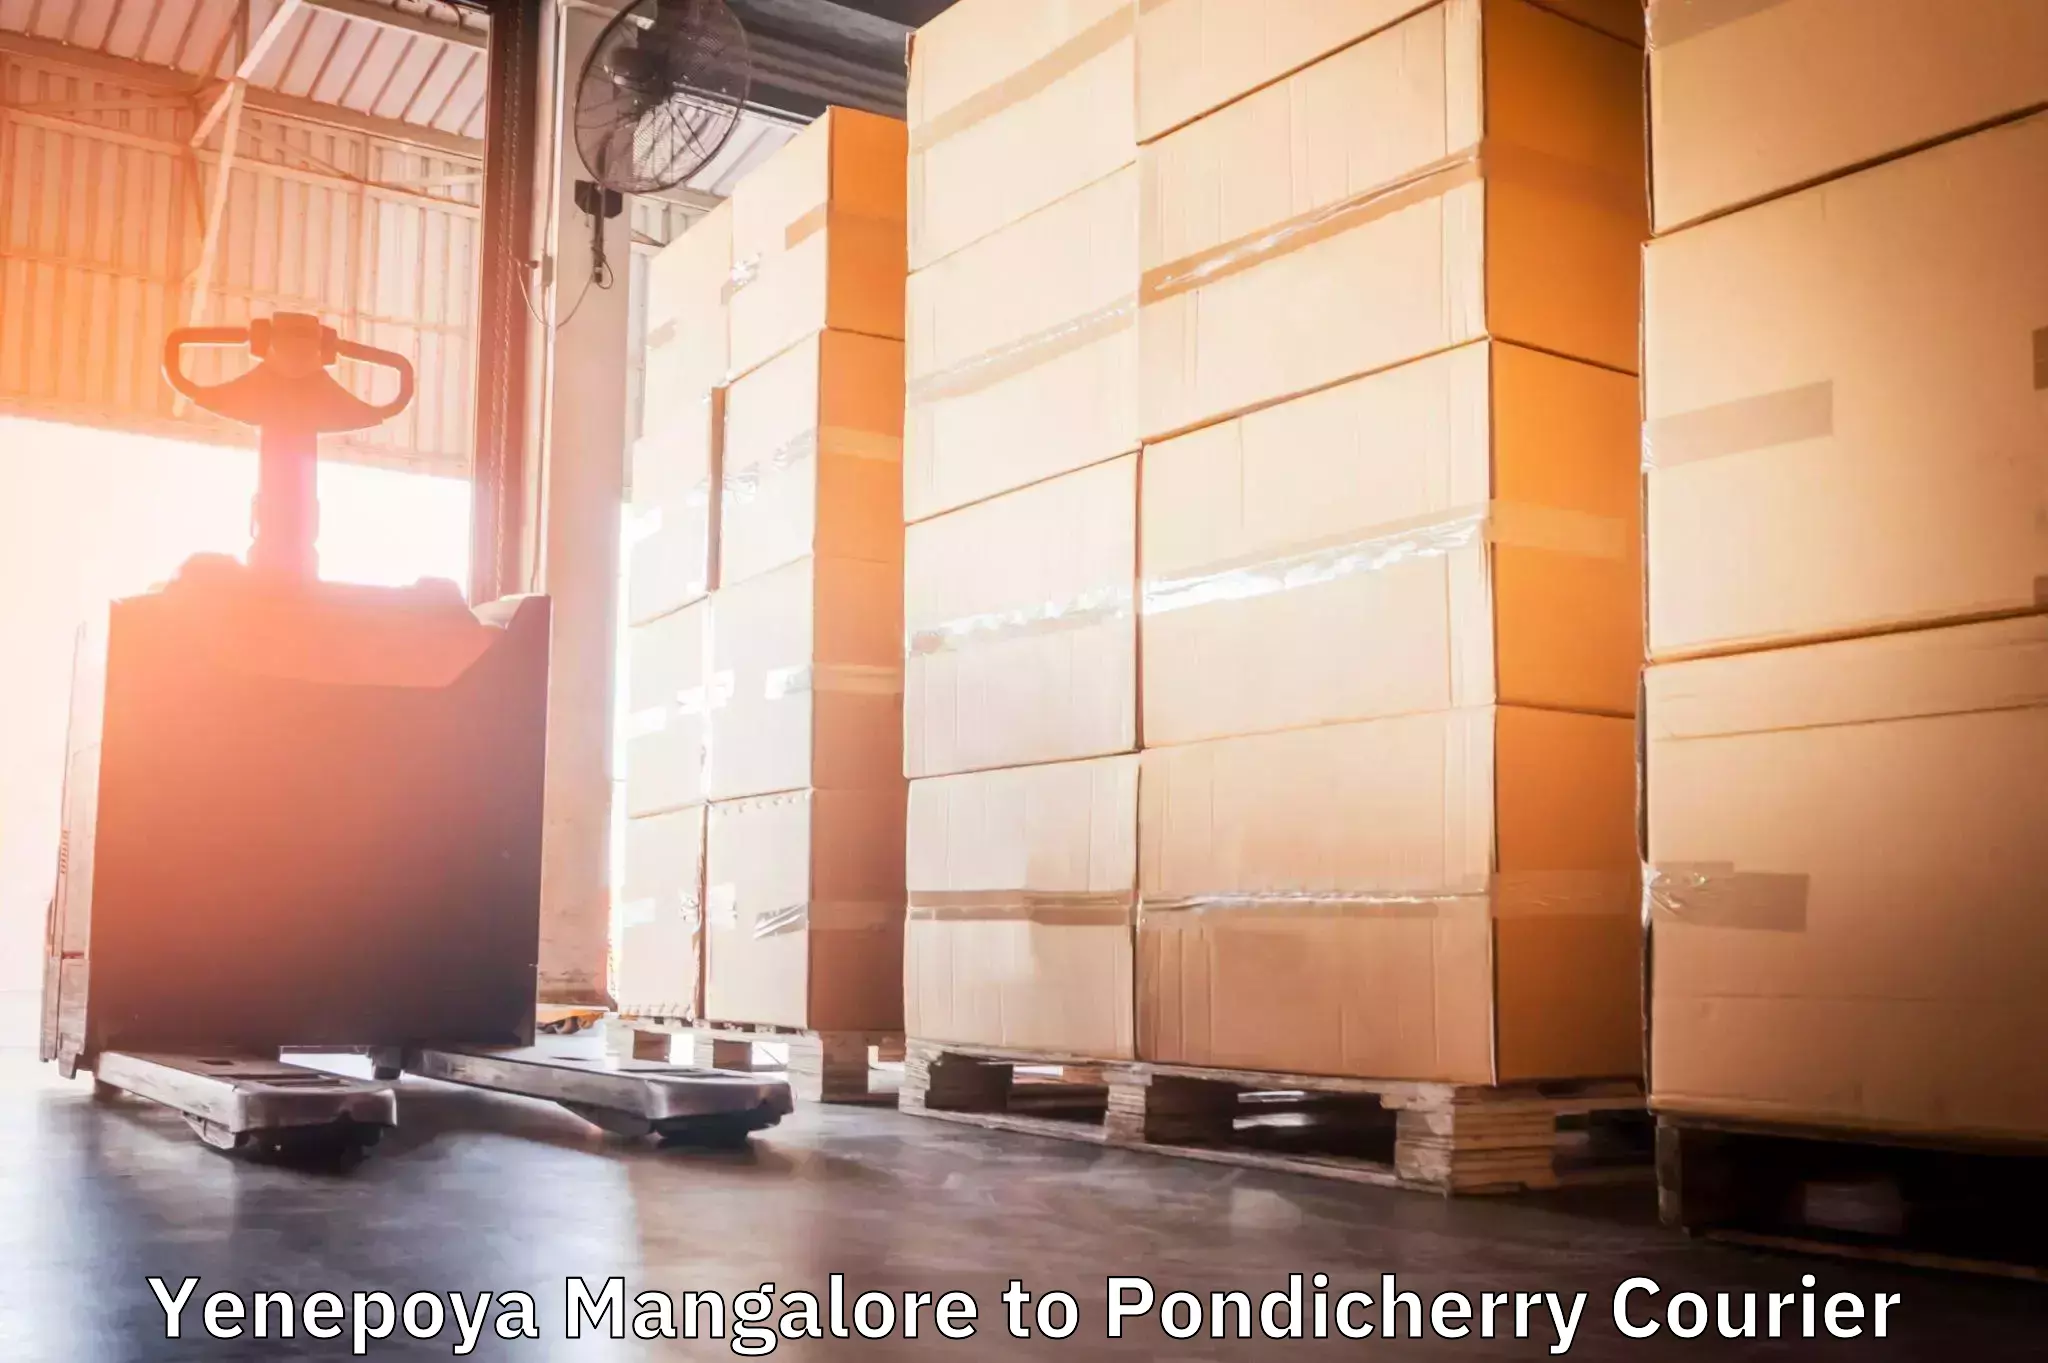 Large-scale shipping solutions Yenepoya Mangalore to Pondicherry